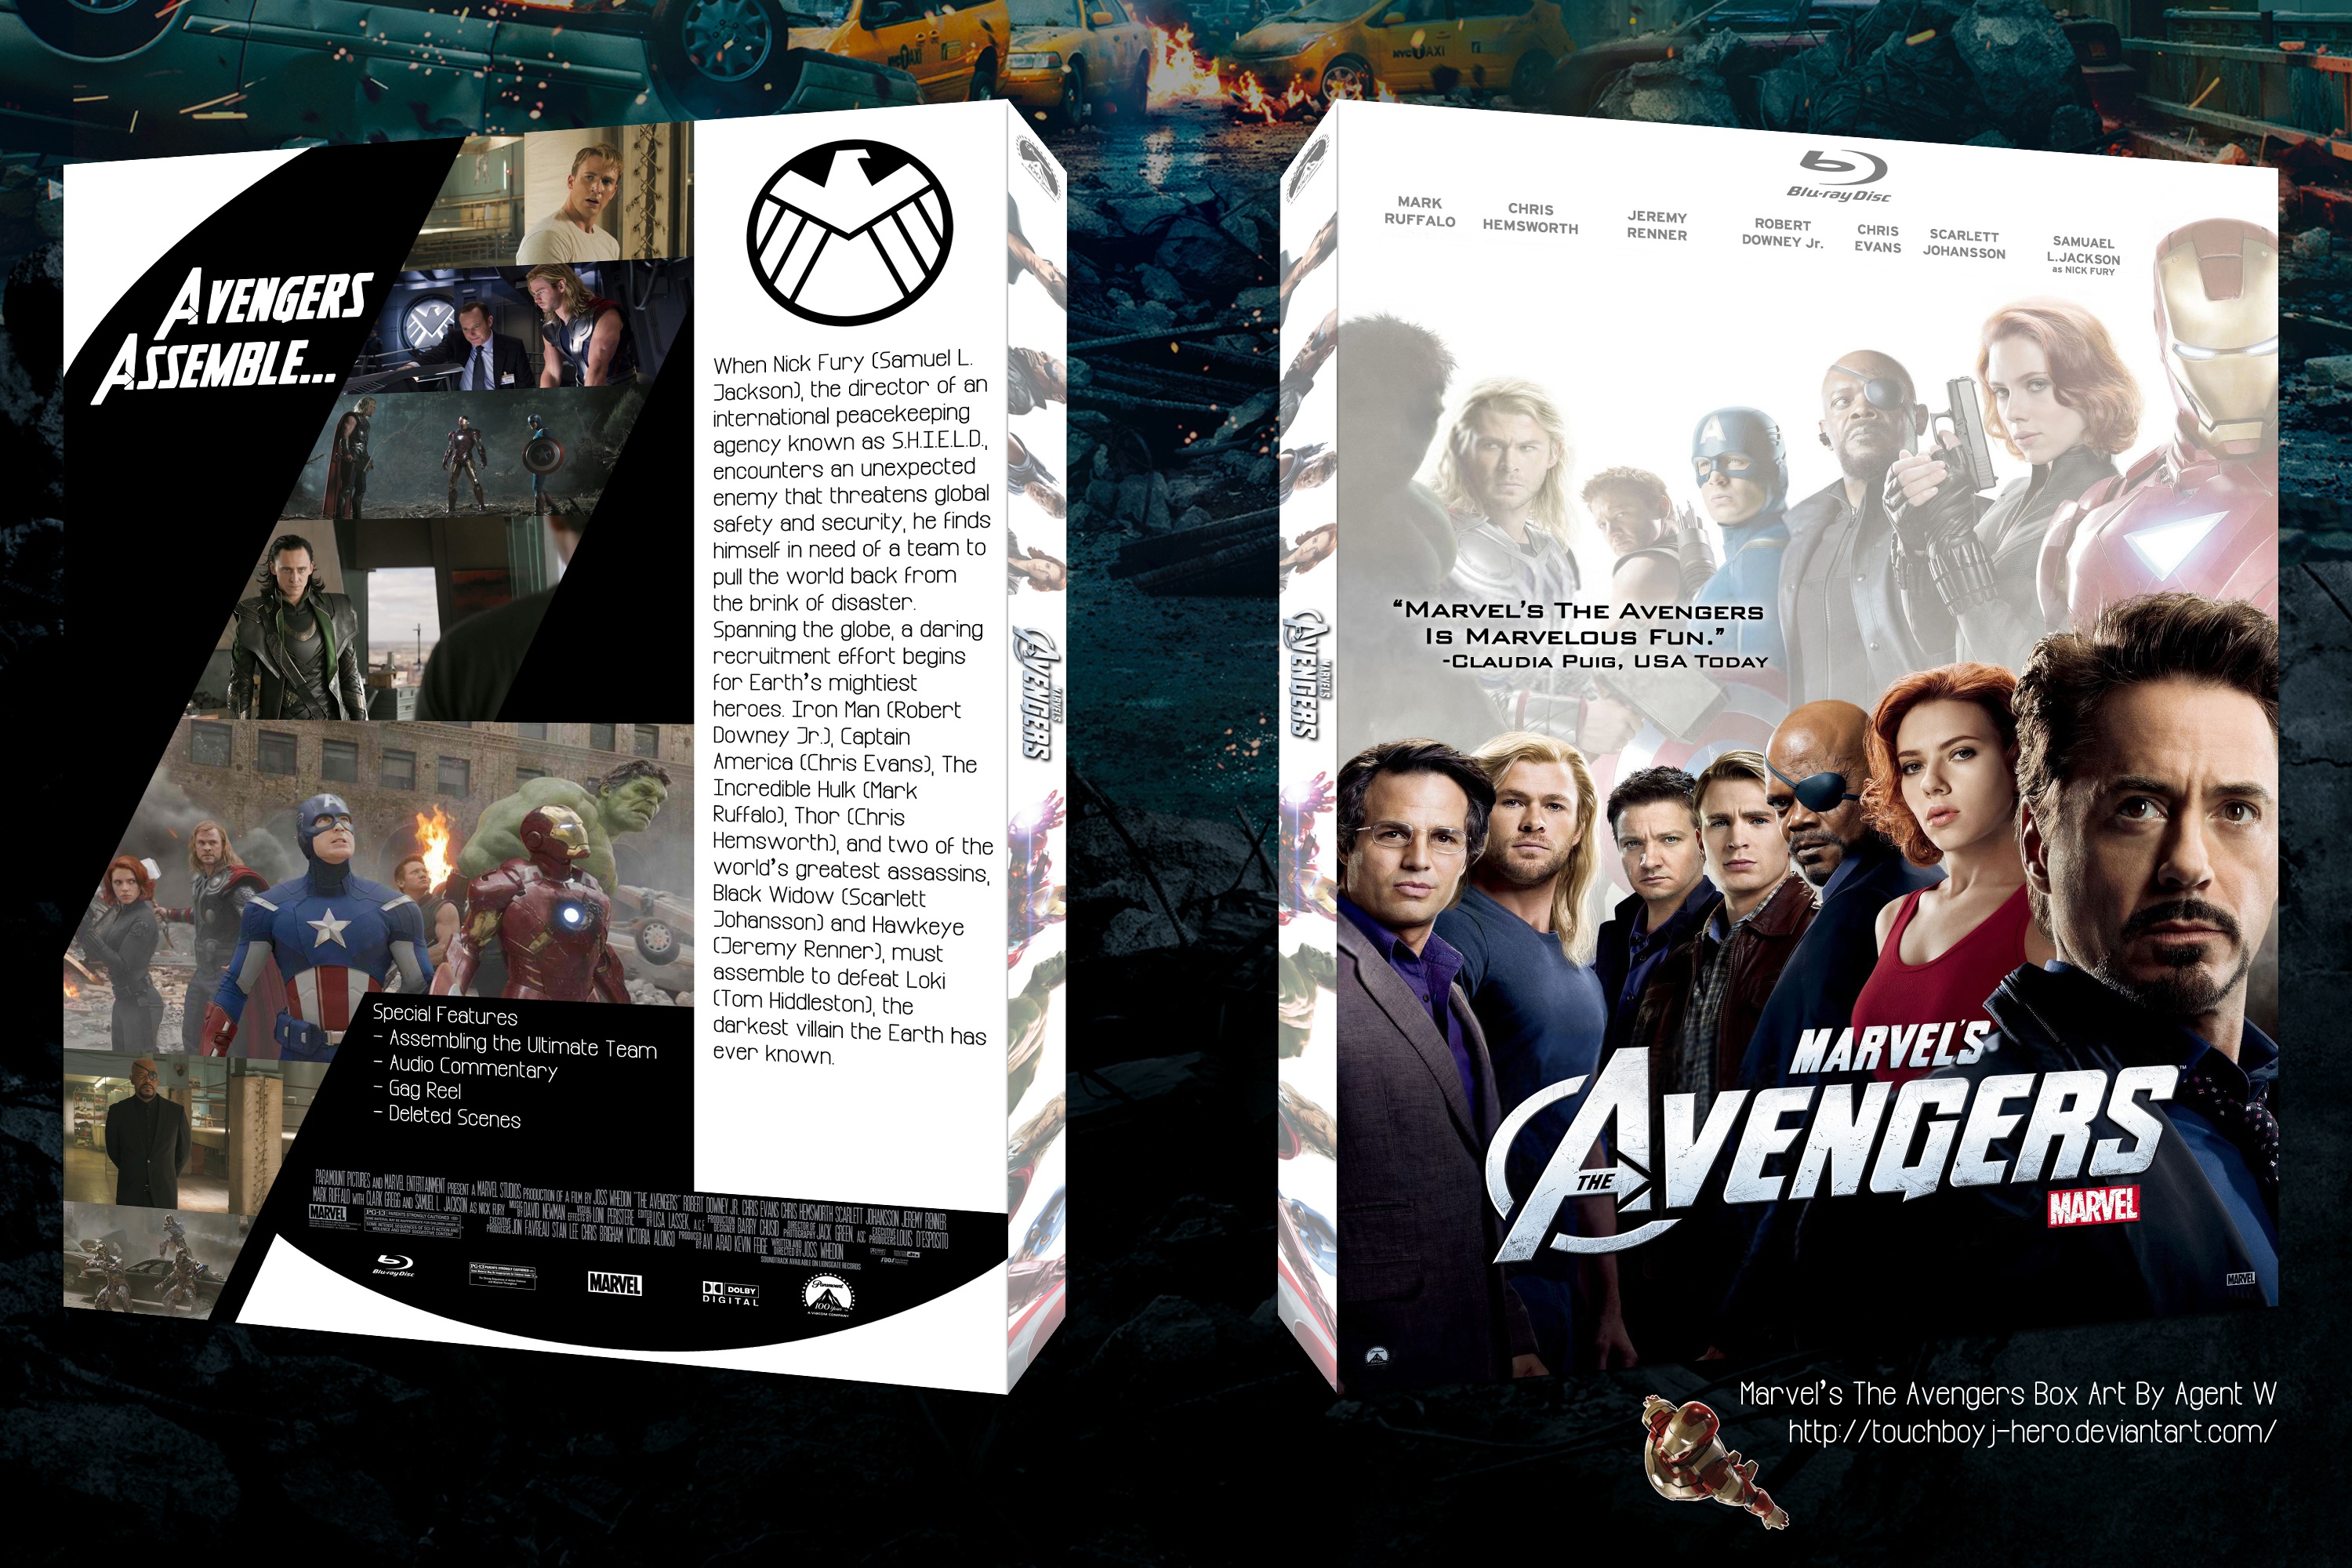 Marvel's The Avengers box cover